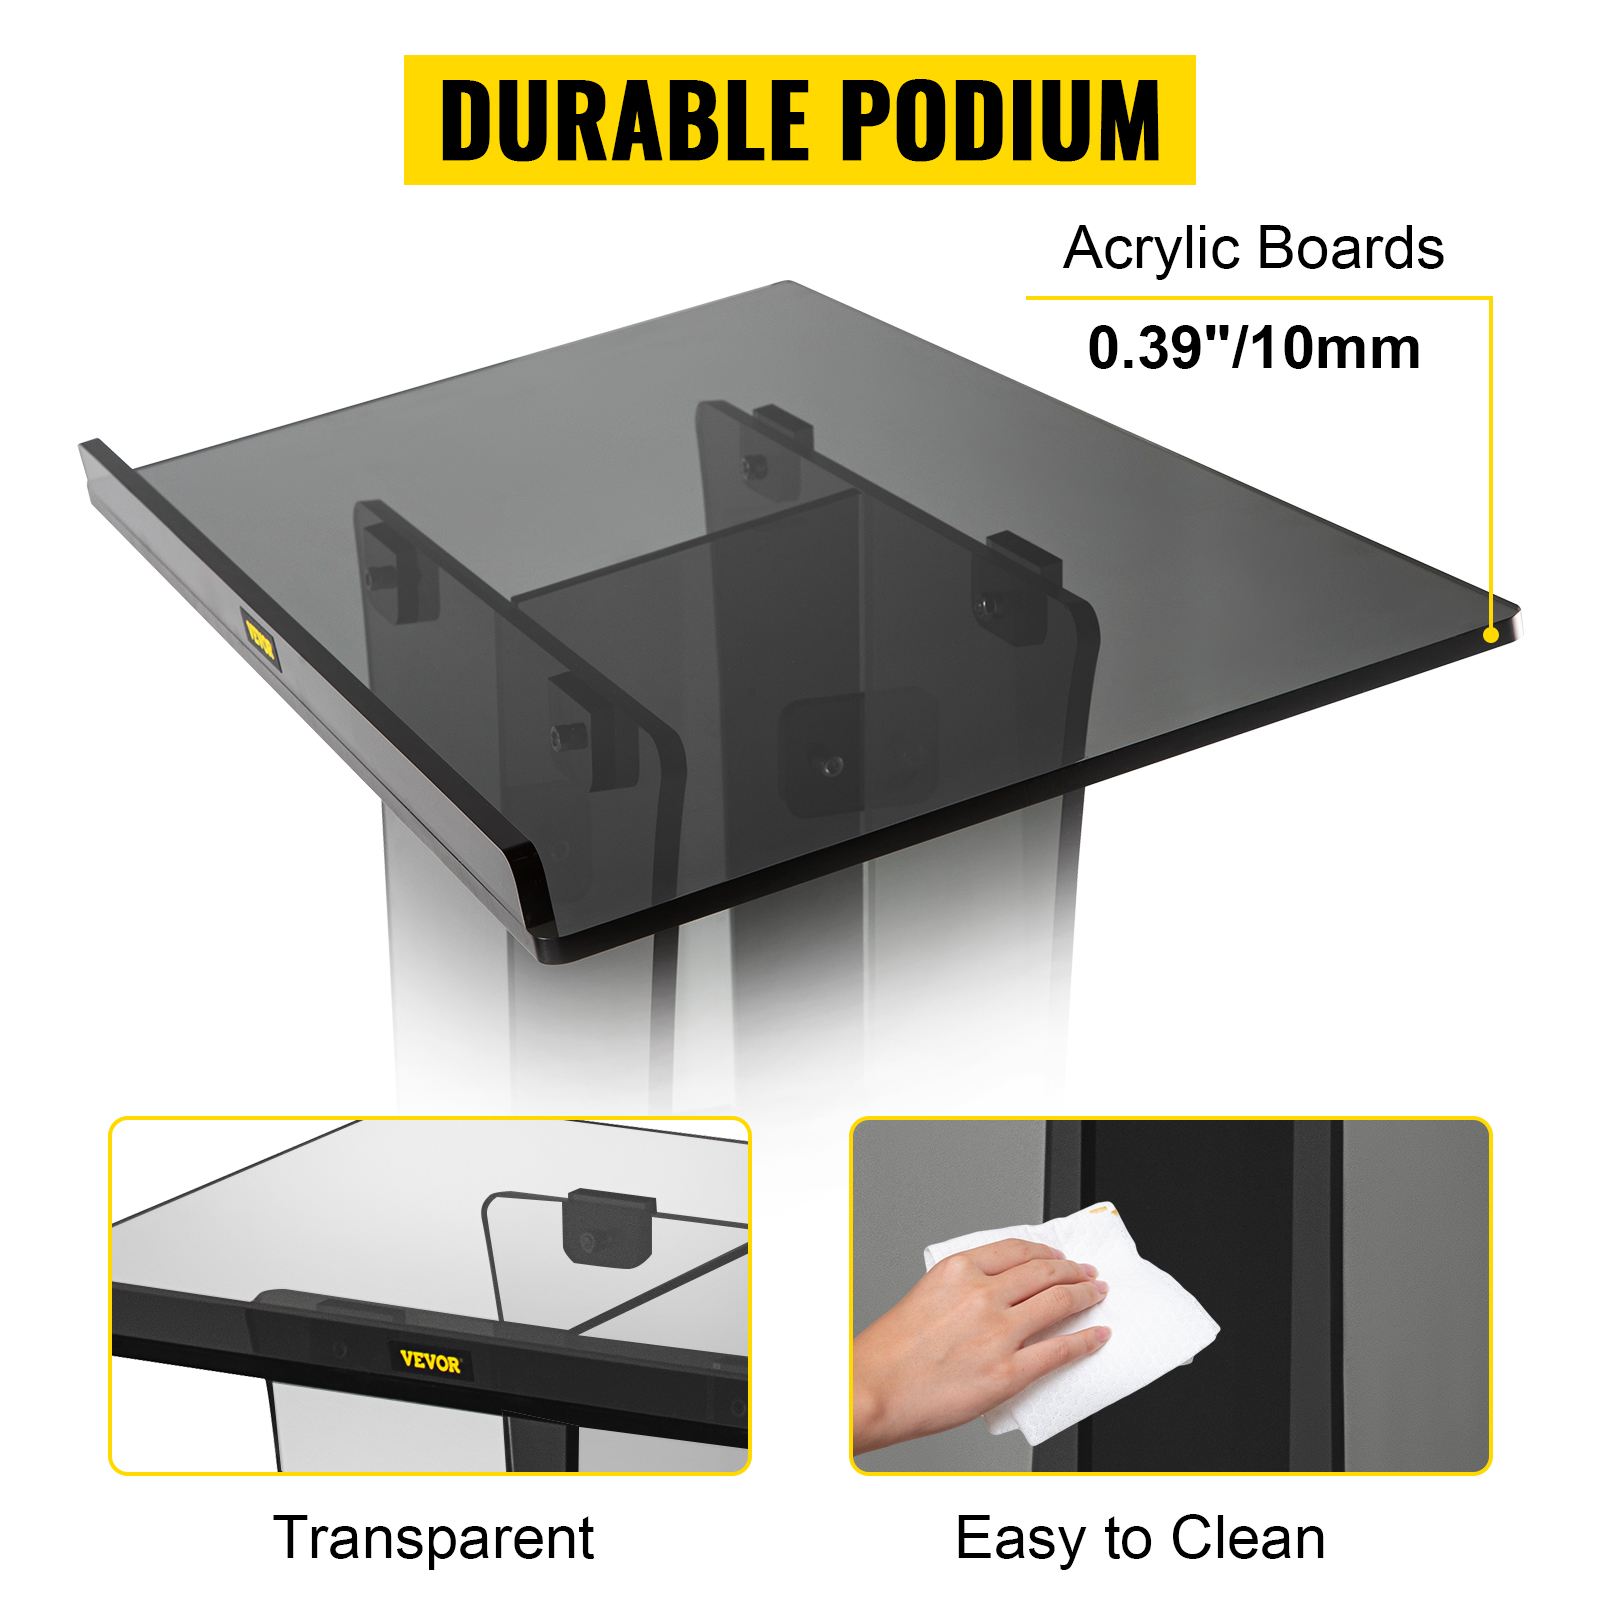 DRERIO Grande feuille de plastique acrylique noir de 3 mm en plexiglas  acrylique pour travaux manuels, planches en plastique acrylique de 3 mm  pour